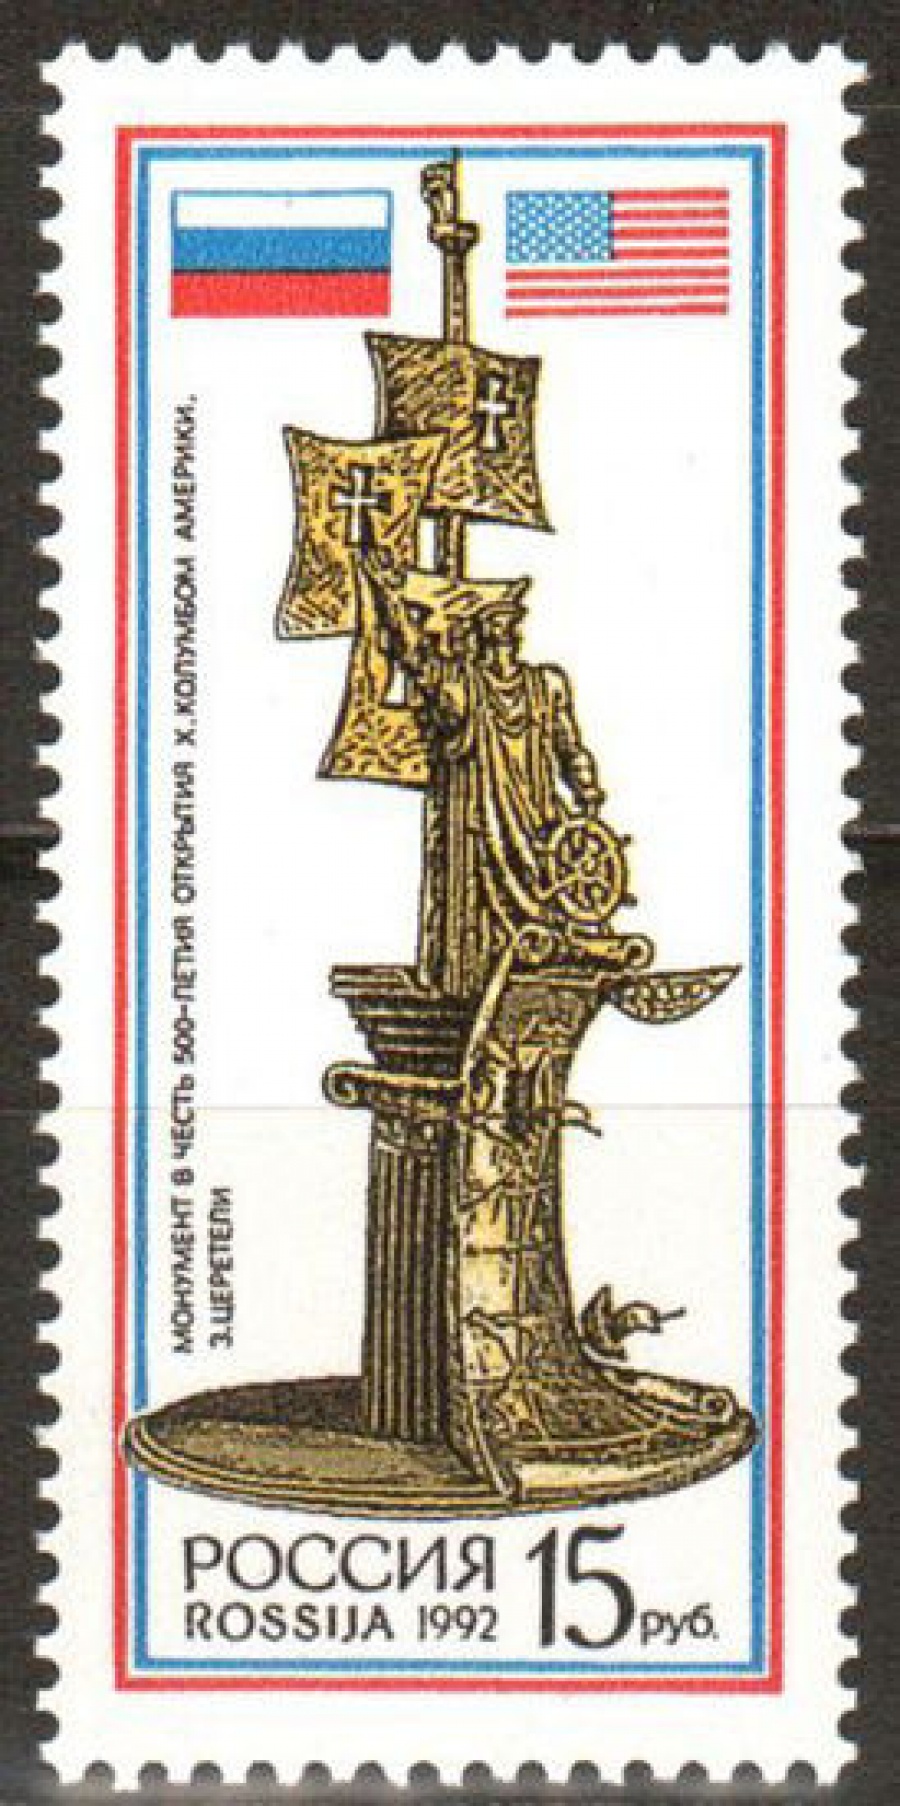 Почтовая марка Россия 1992 № 63. Монумент в честь 500-летия открытия Х. Колумбом Америки.